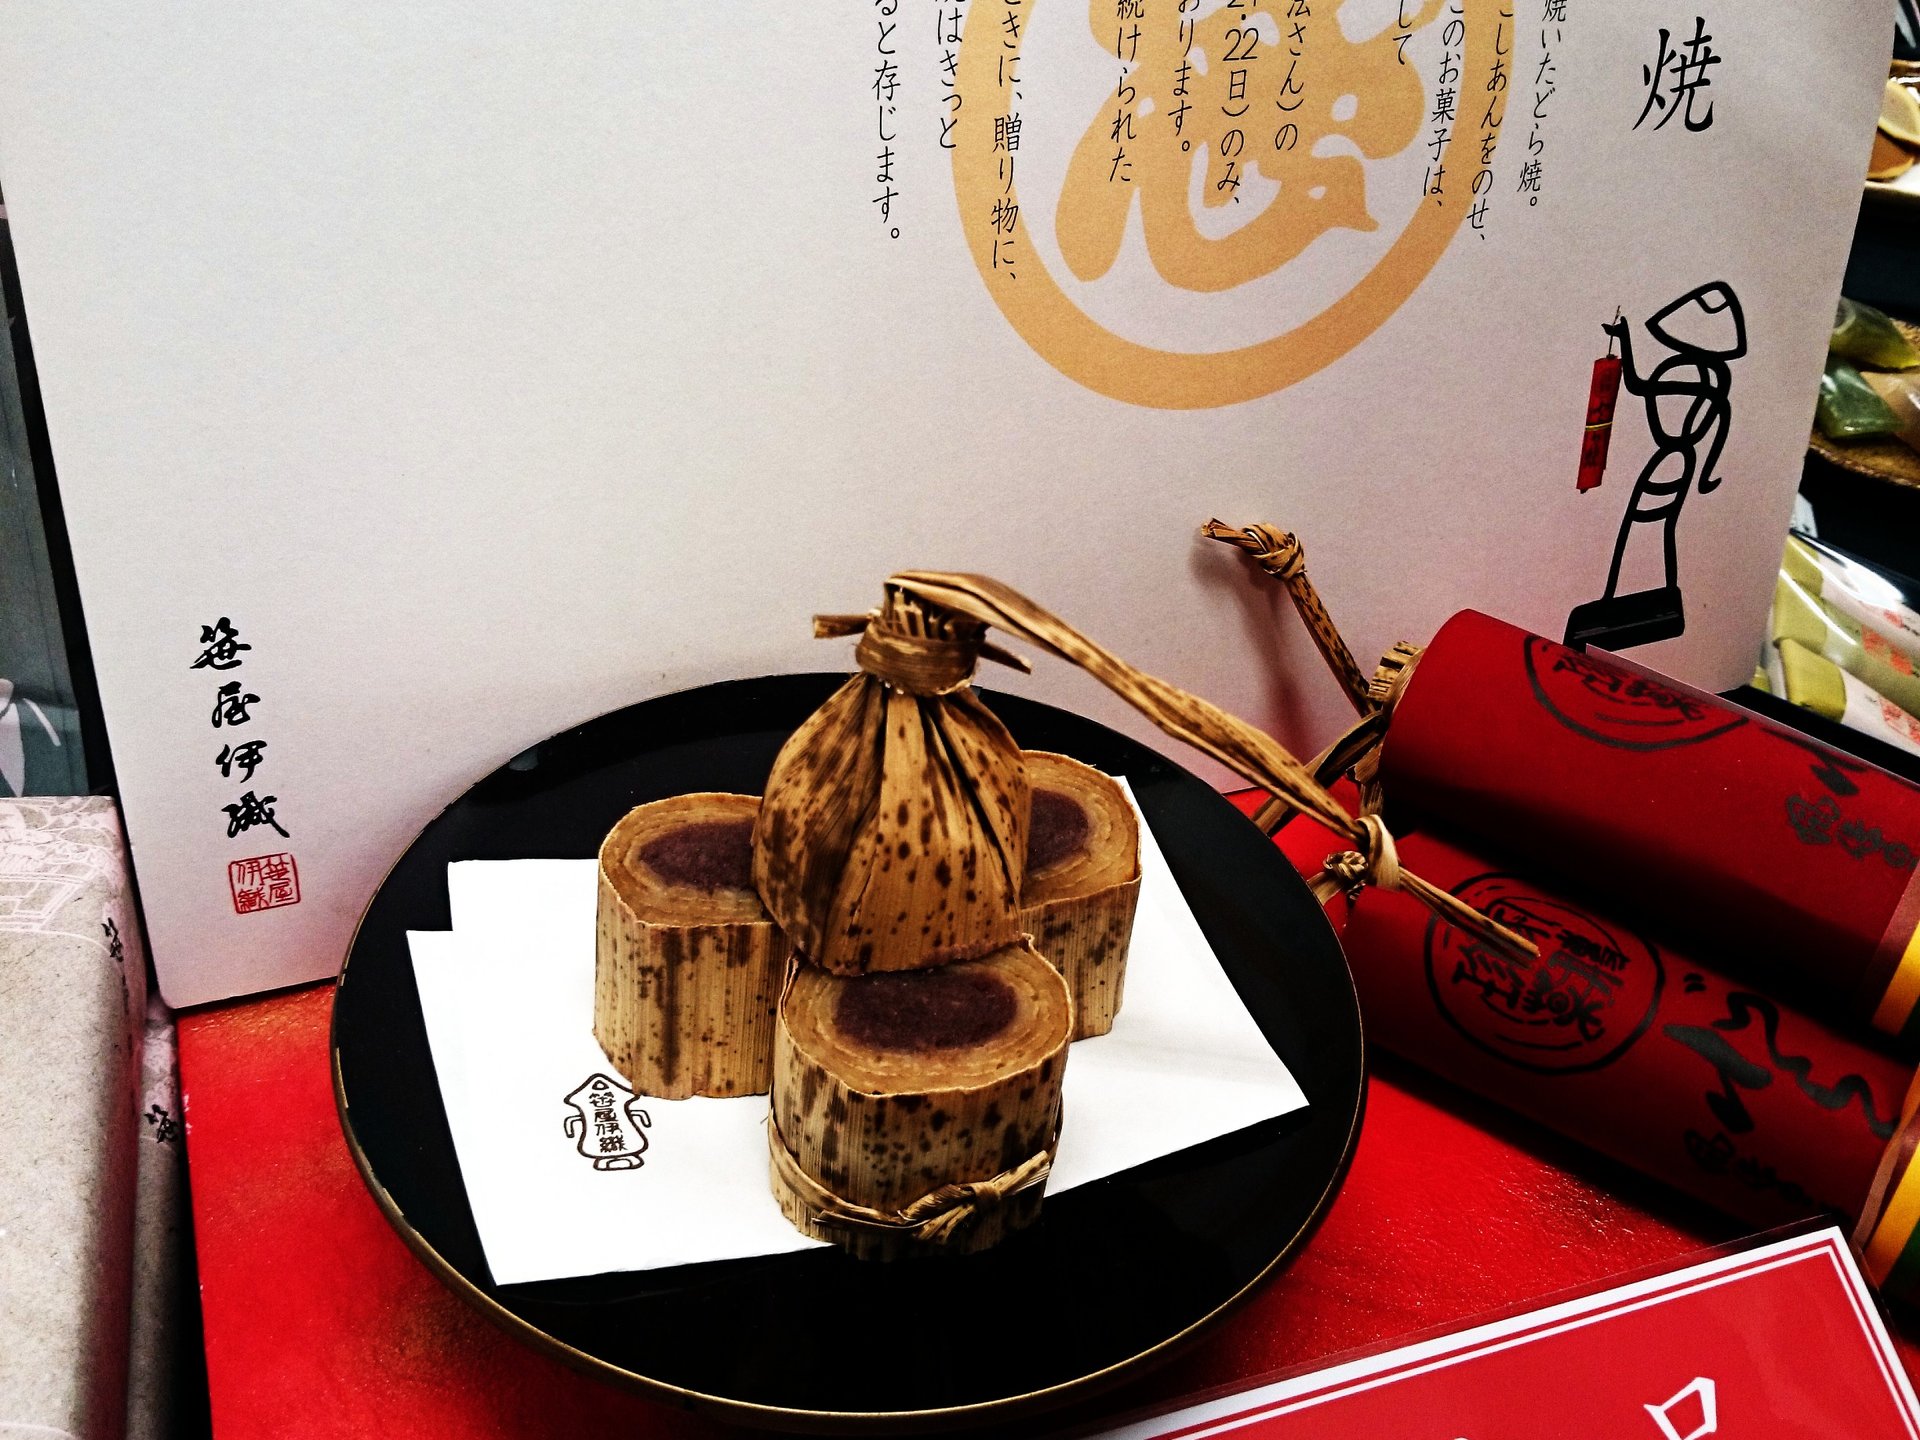 【期間限定】京都老舗展で買うべき美味しい和菓子&お酒まとめ。 レアな京都のものをそごう横浜で！ 